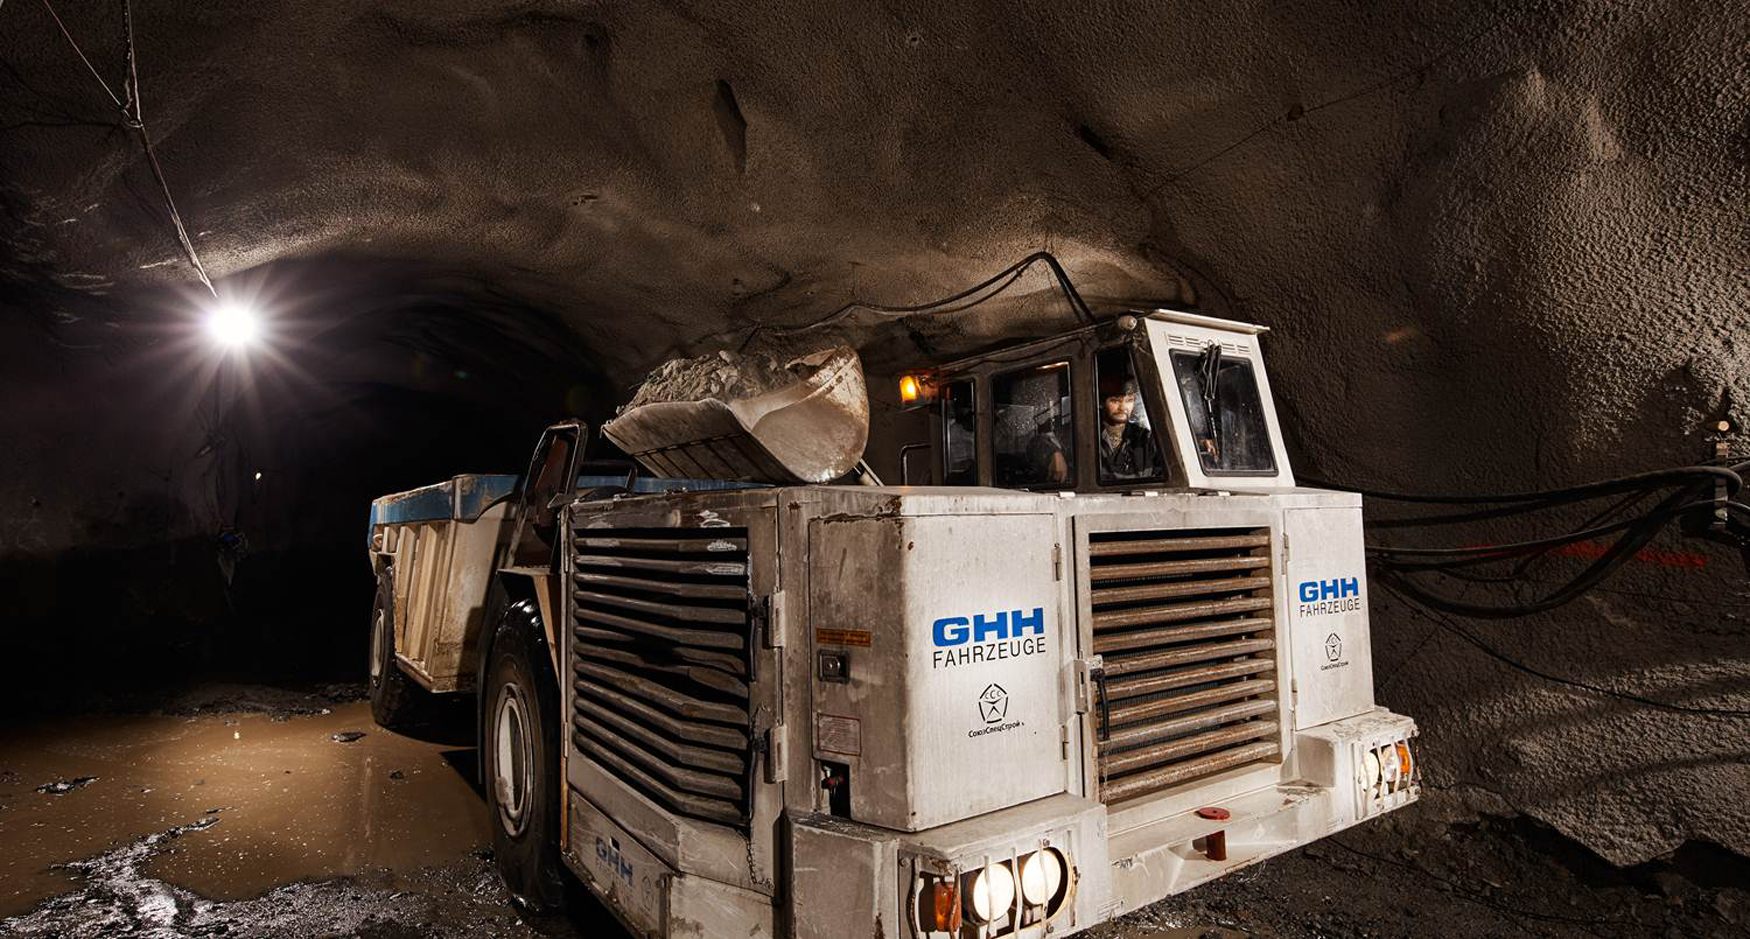 GHH fue uno de los pioneros en equipos mineros en Espaa